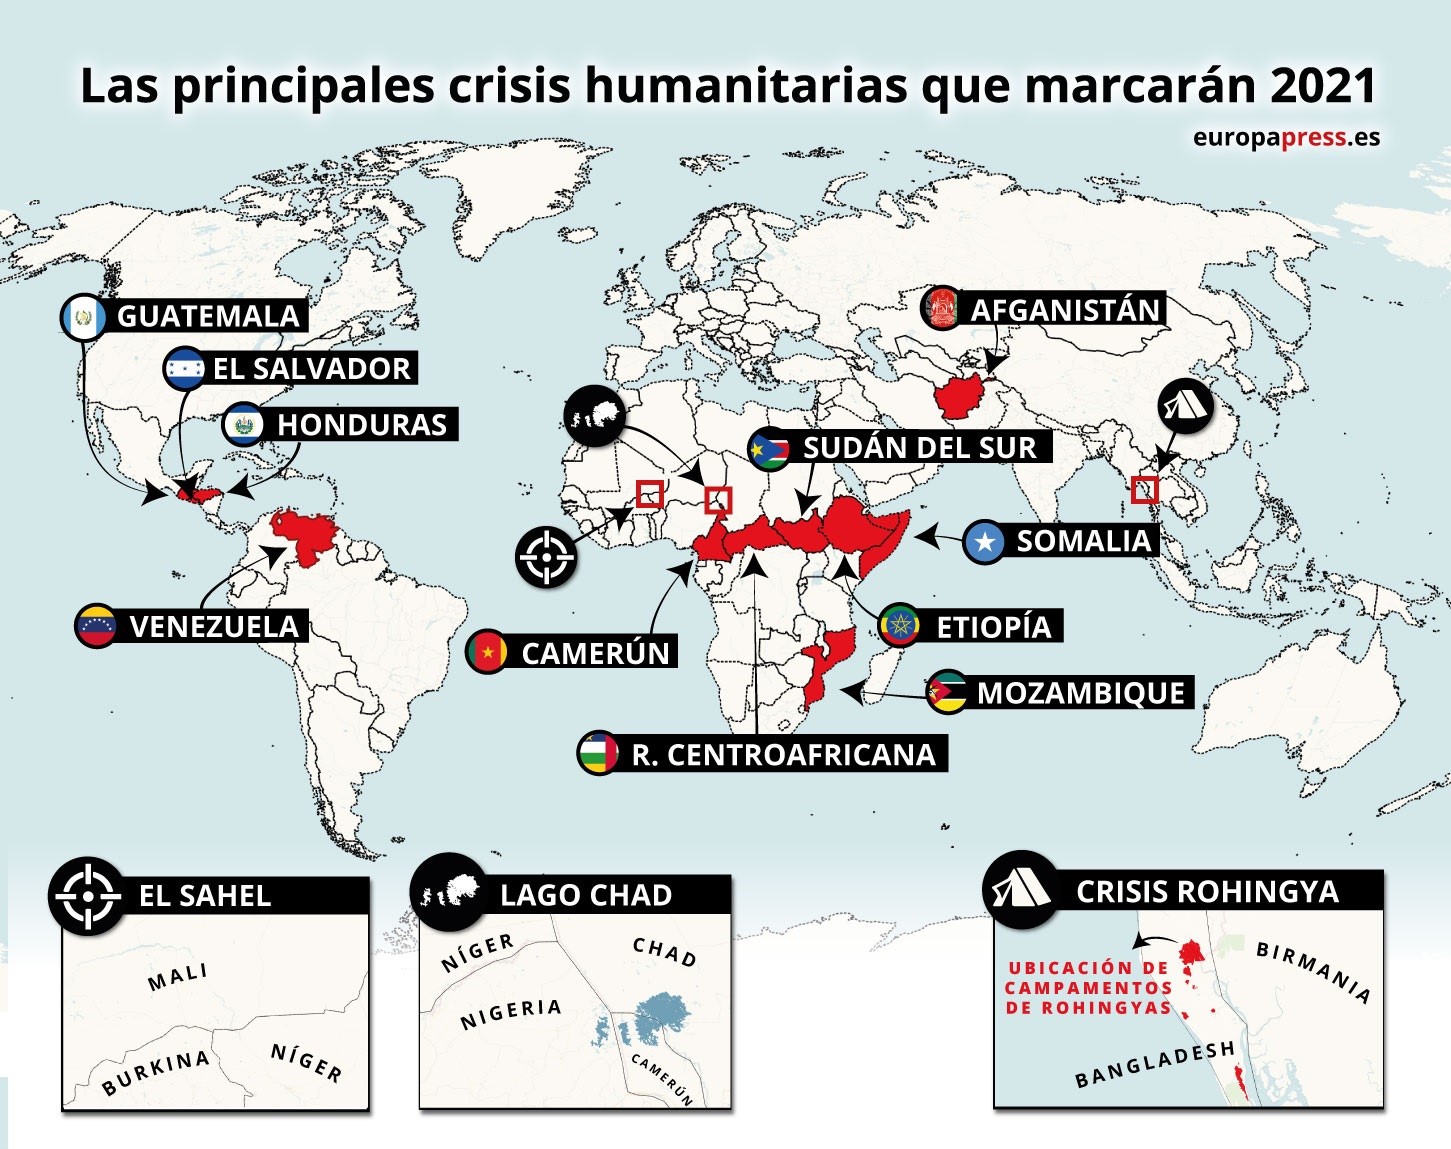 Las 15 principales crisis humanitarias que marcarán 2021